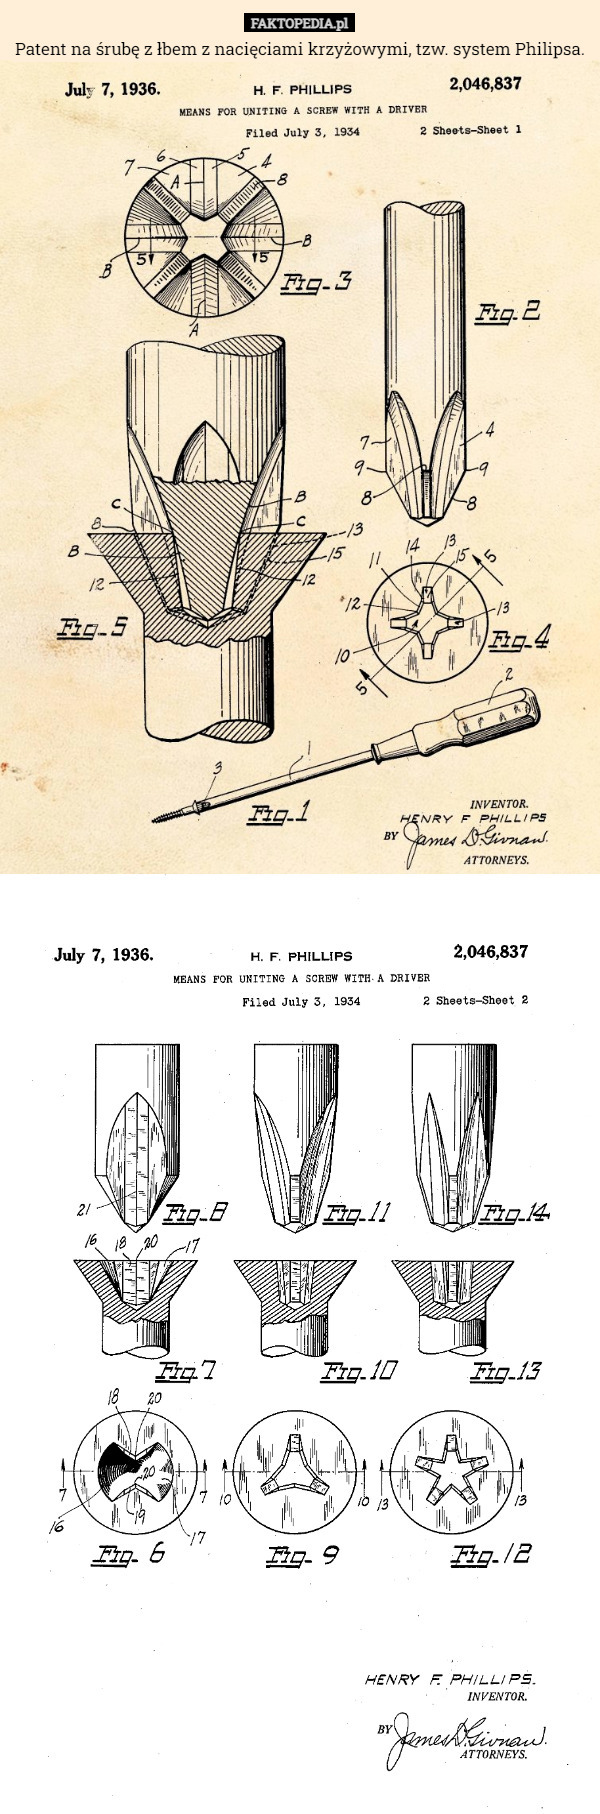 Patent na śrubę z łbem z nacięciami krzyżowymi, tzw. system Philipsa. 